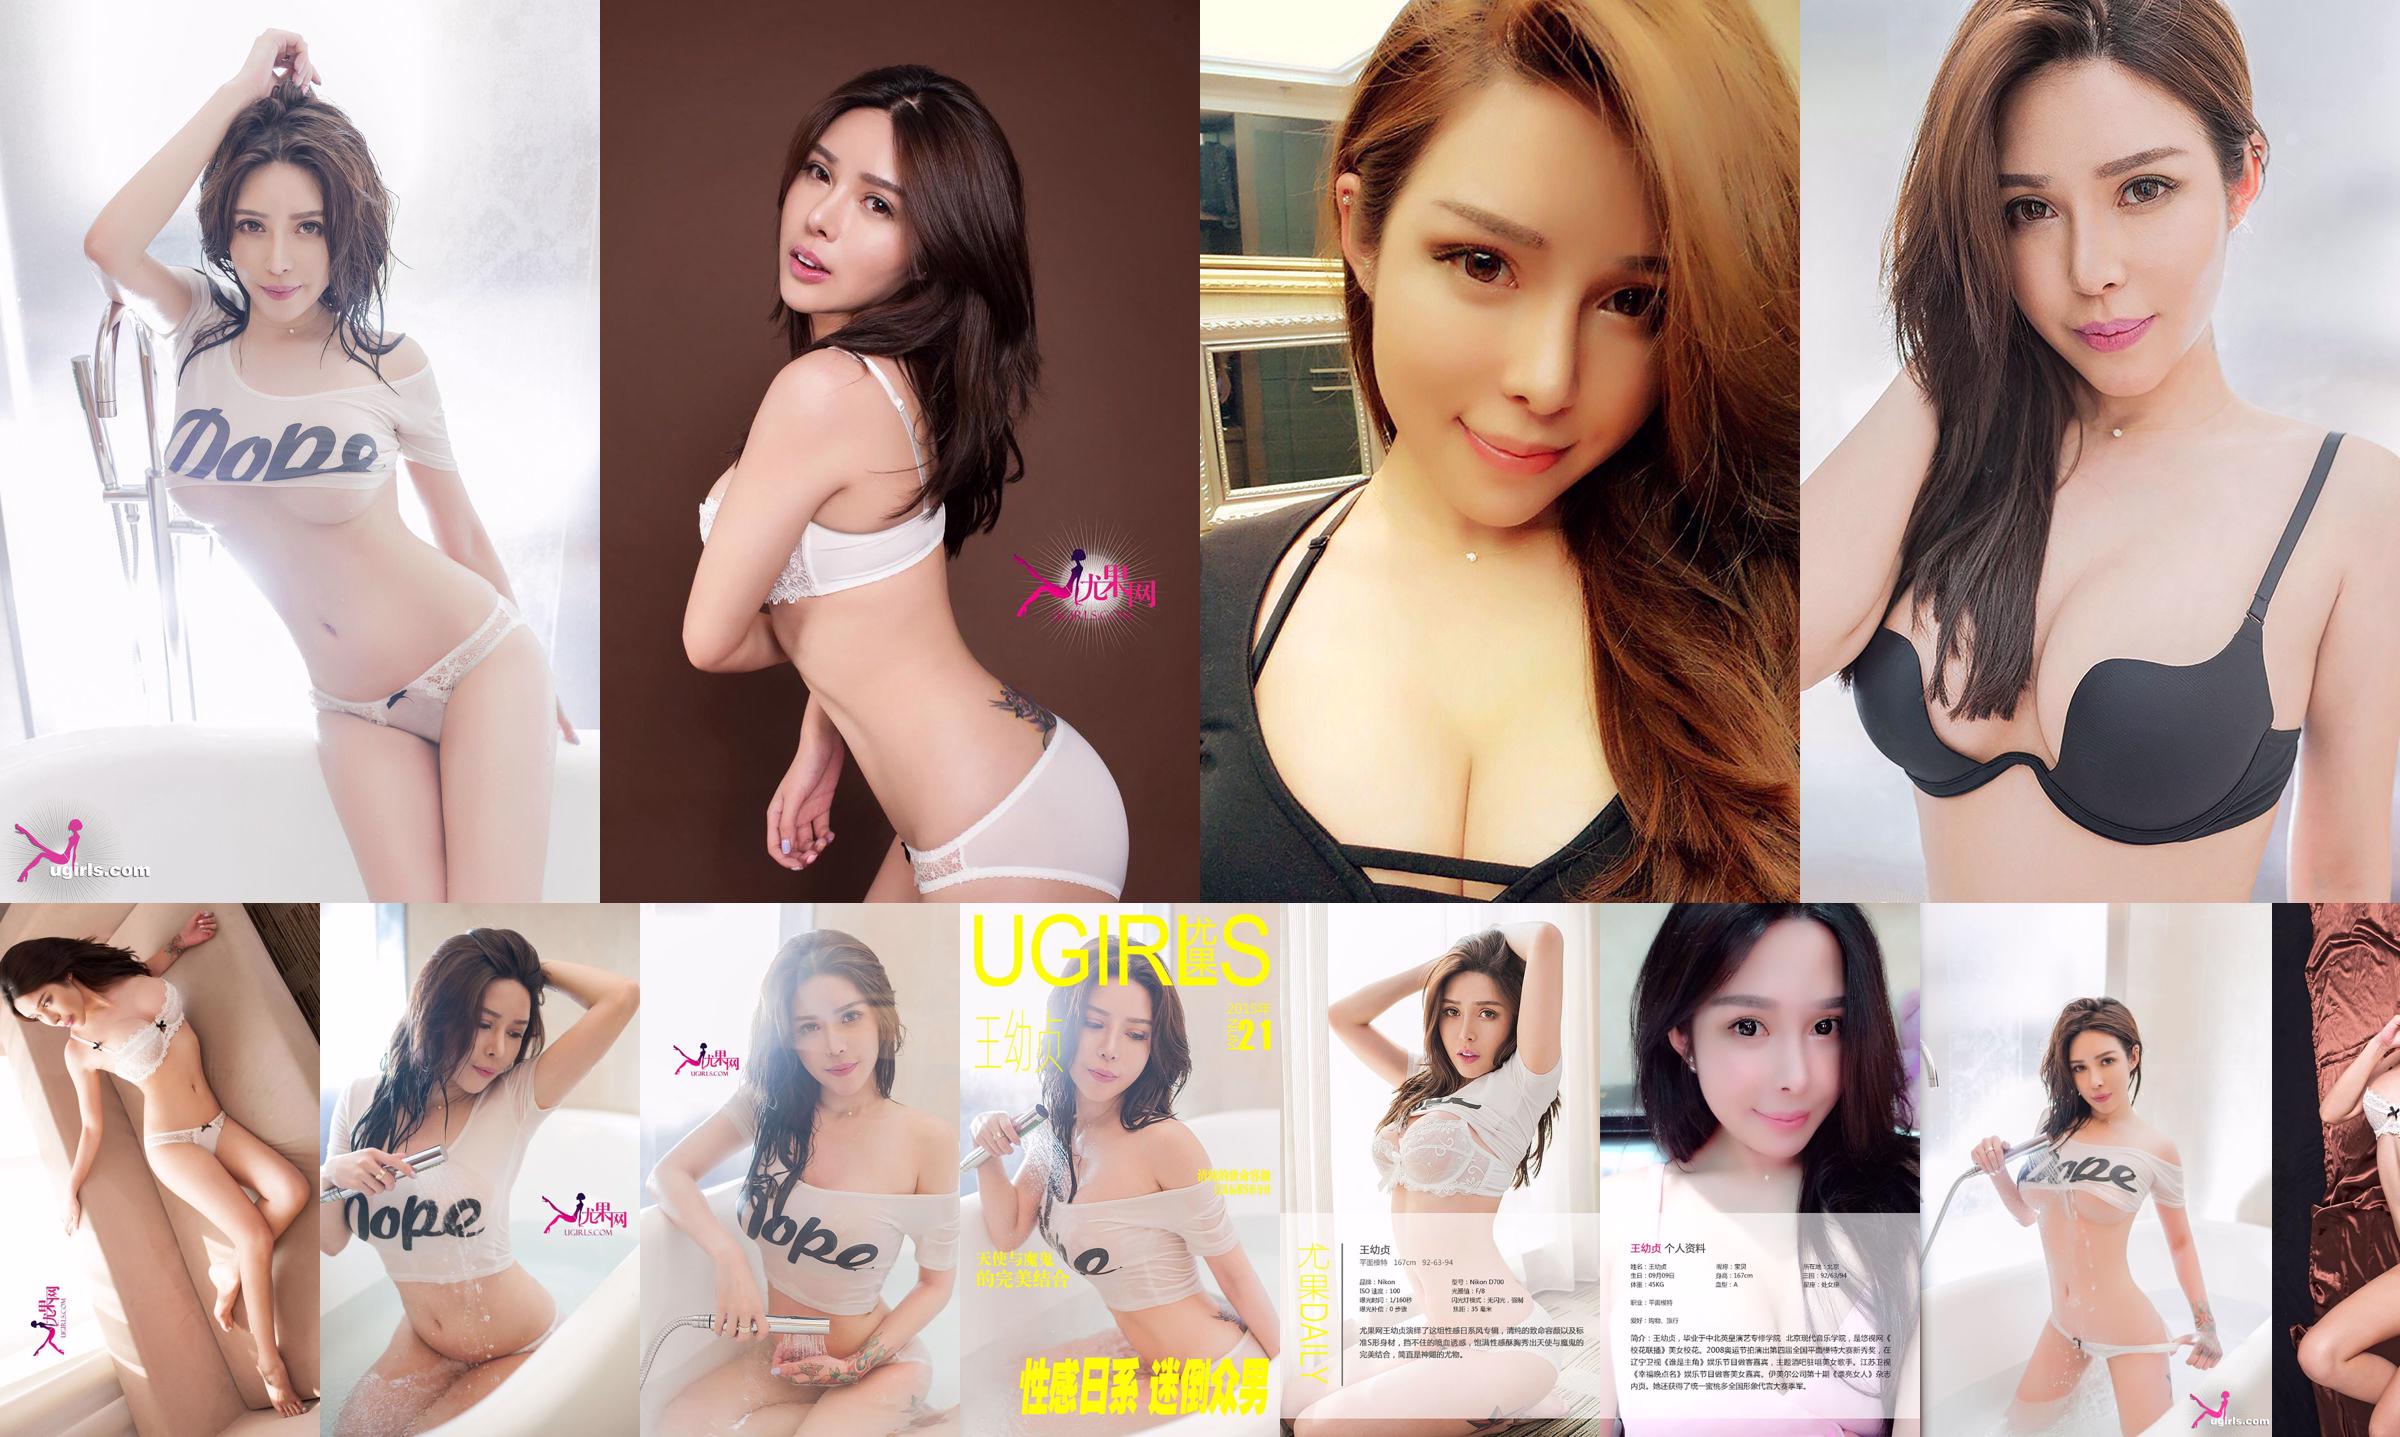 [Youguo Ugirls] E036 Wang Youzhen "Sexy Japanese Style" No.2b5a02 Page 7